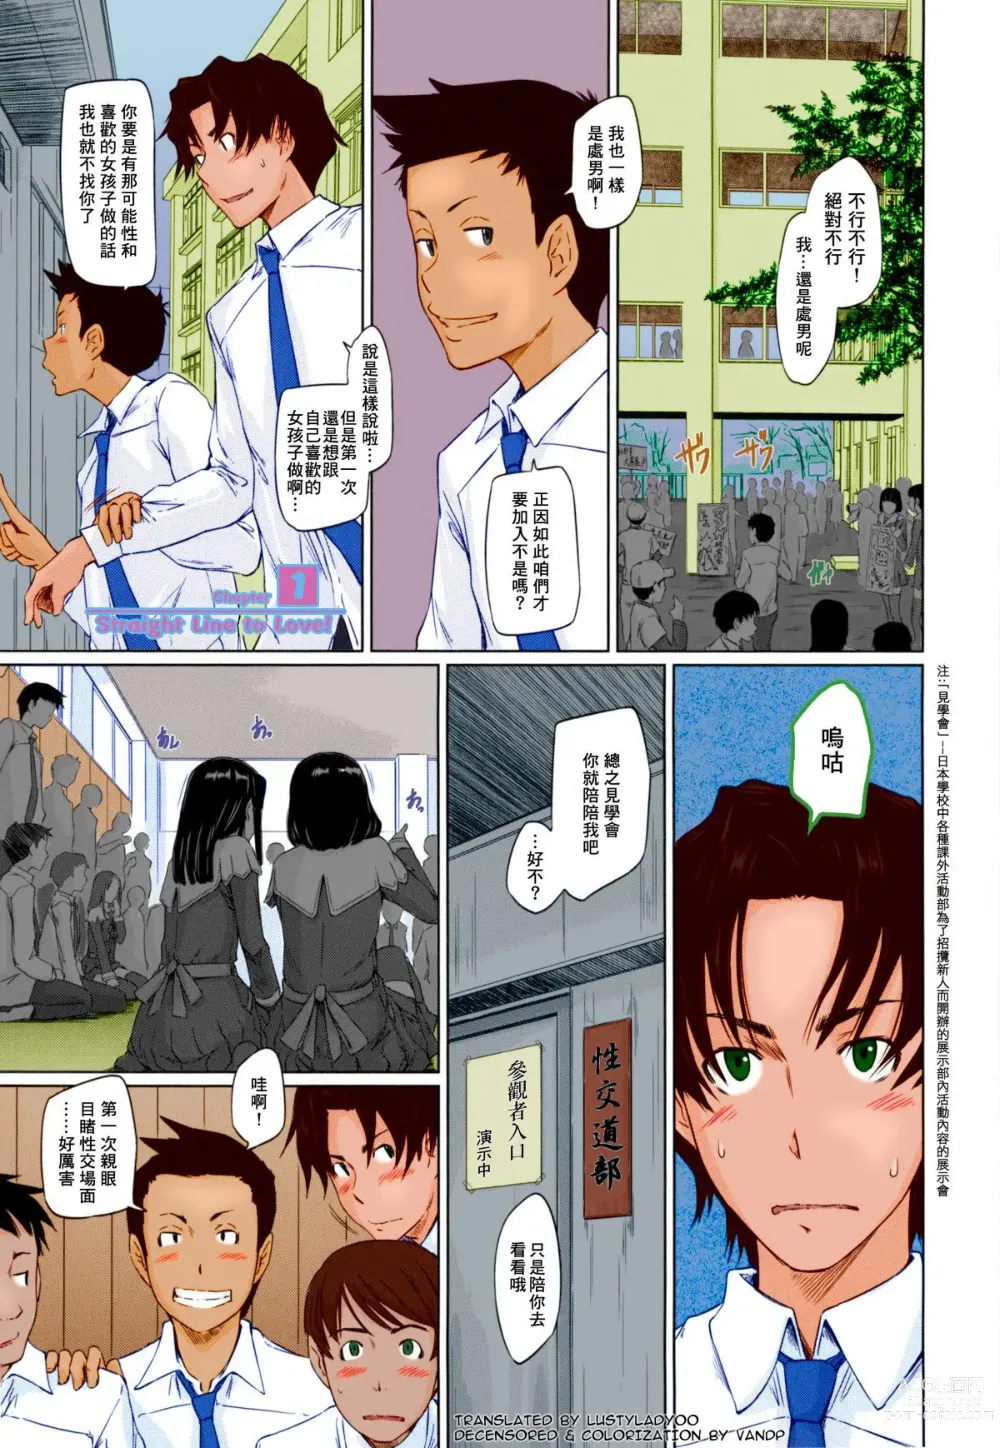 Page 8 of manga Suki ni nattara itchokusen!